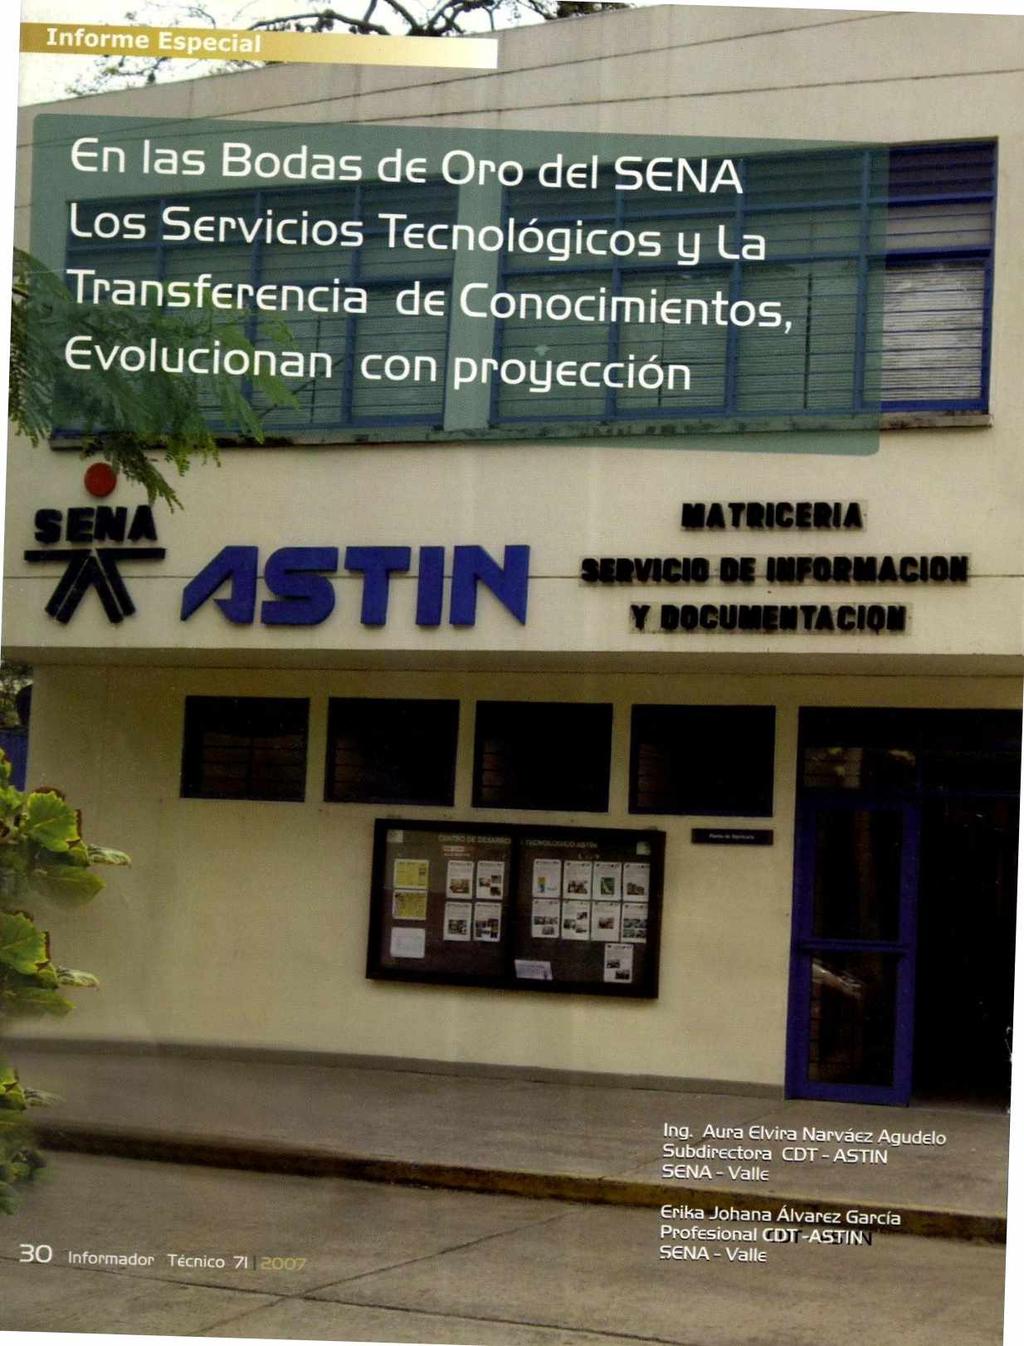 En las Bodas de Oro del SENA Los Servicios TecnolOgicos g La TransfErEncia de ConocimiEnt Evolucionan con progeccion 4 isalassiam46.